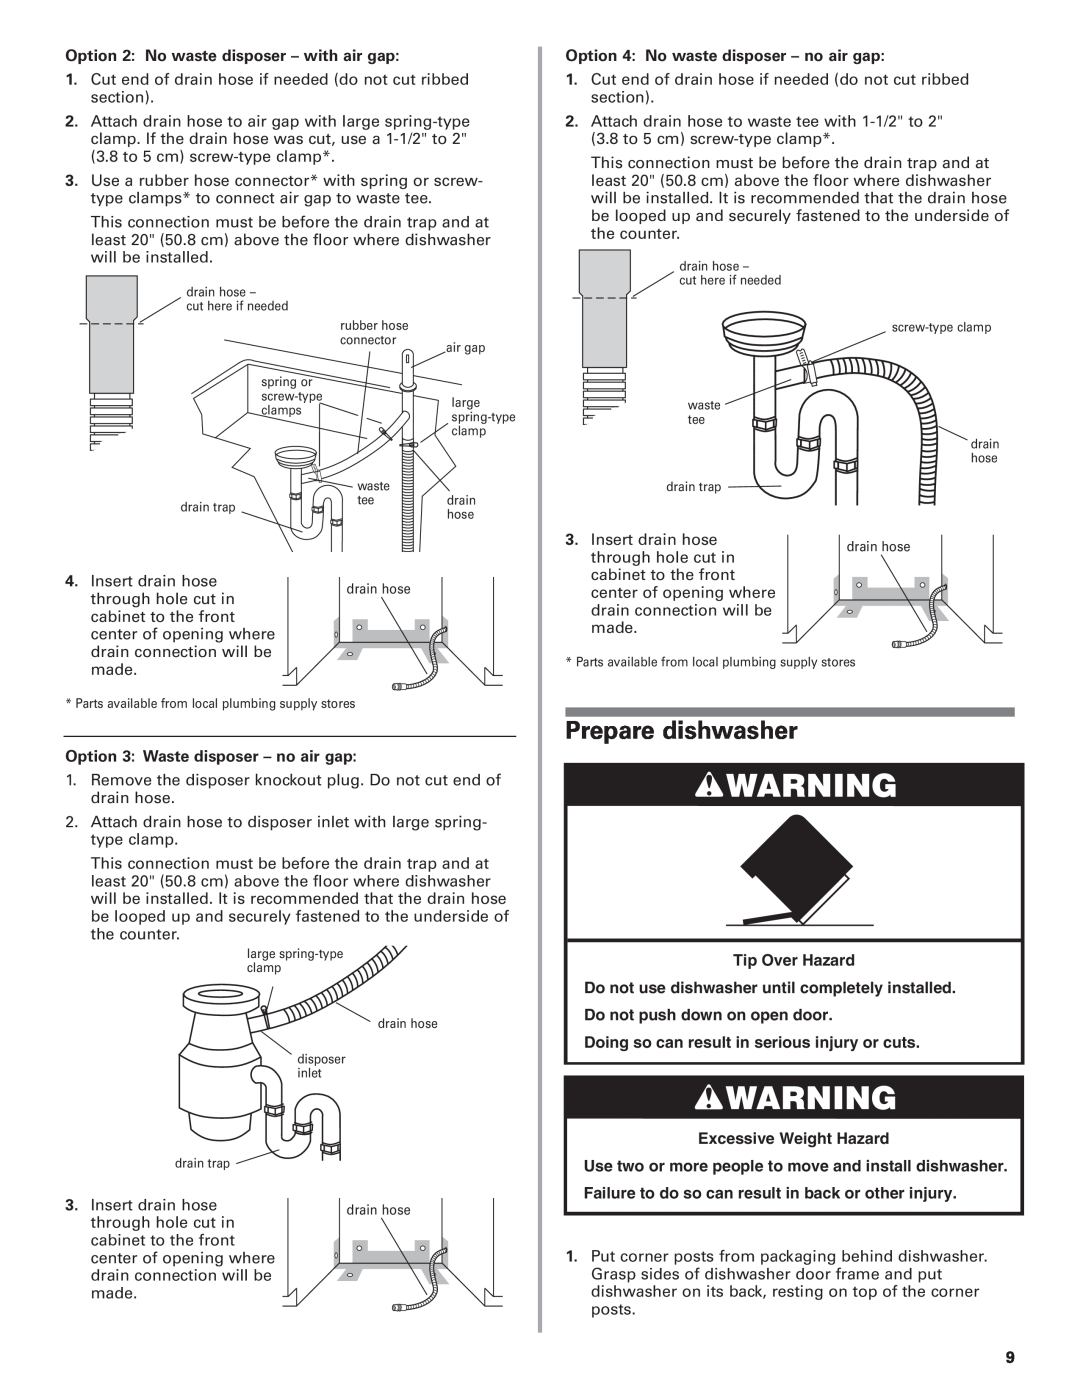 KitchenAid 8564554 Prepare dishwasher, Tip Over Hazard, Excessive Weight Hazard, Option 2 No waste disposer - with air gap 